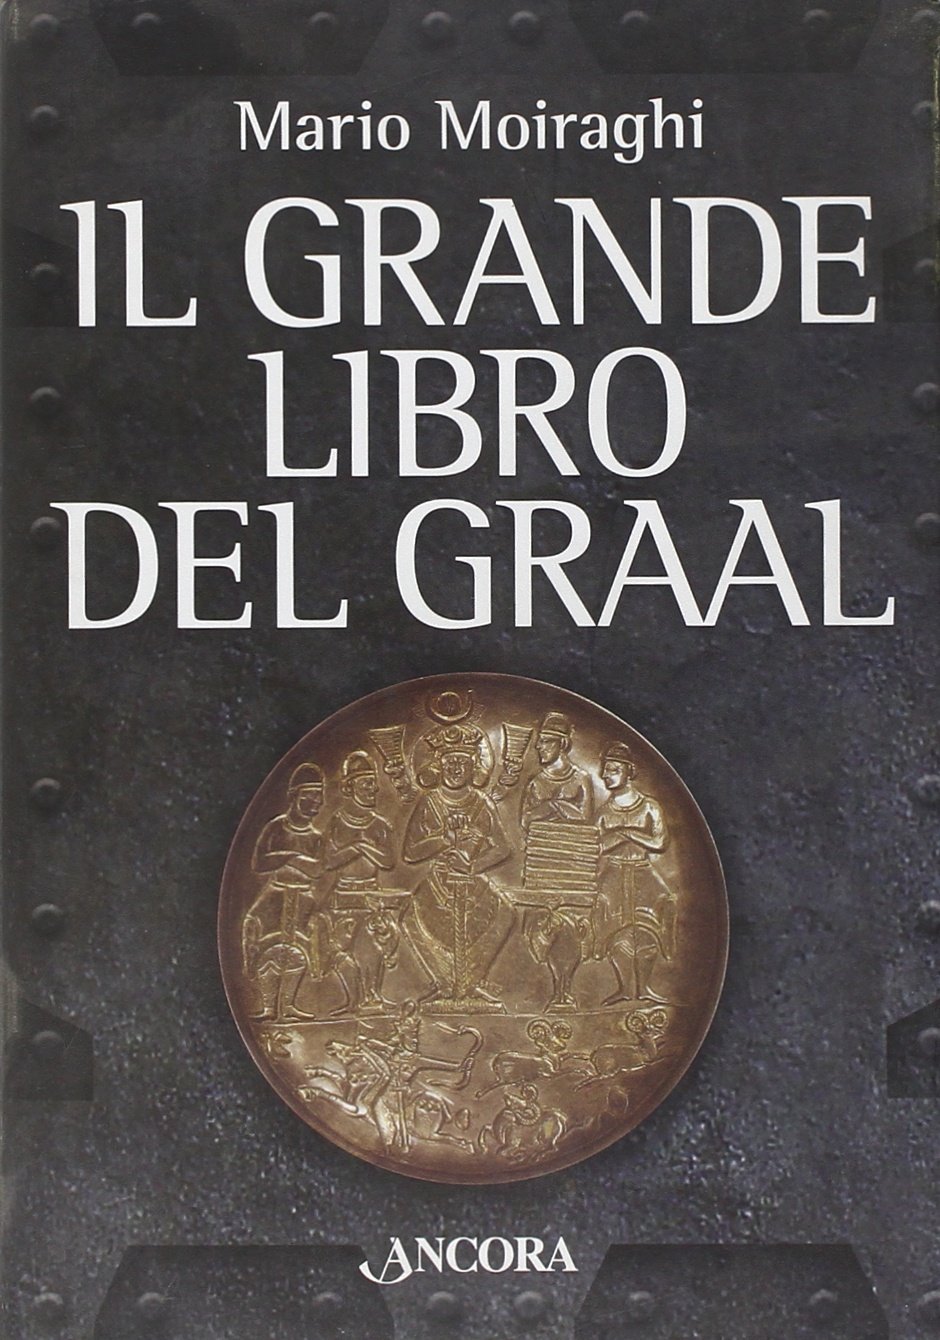 Libri Mario Moiraghi - Il Grande Libro Del Graal NUOVO SIGILLATO, EDIZIONE DEL 21/06/2006 SUBITO DISPONIBILE